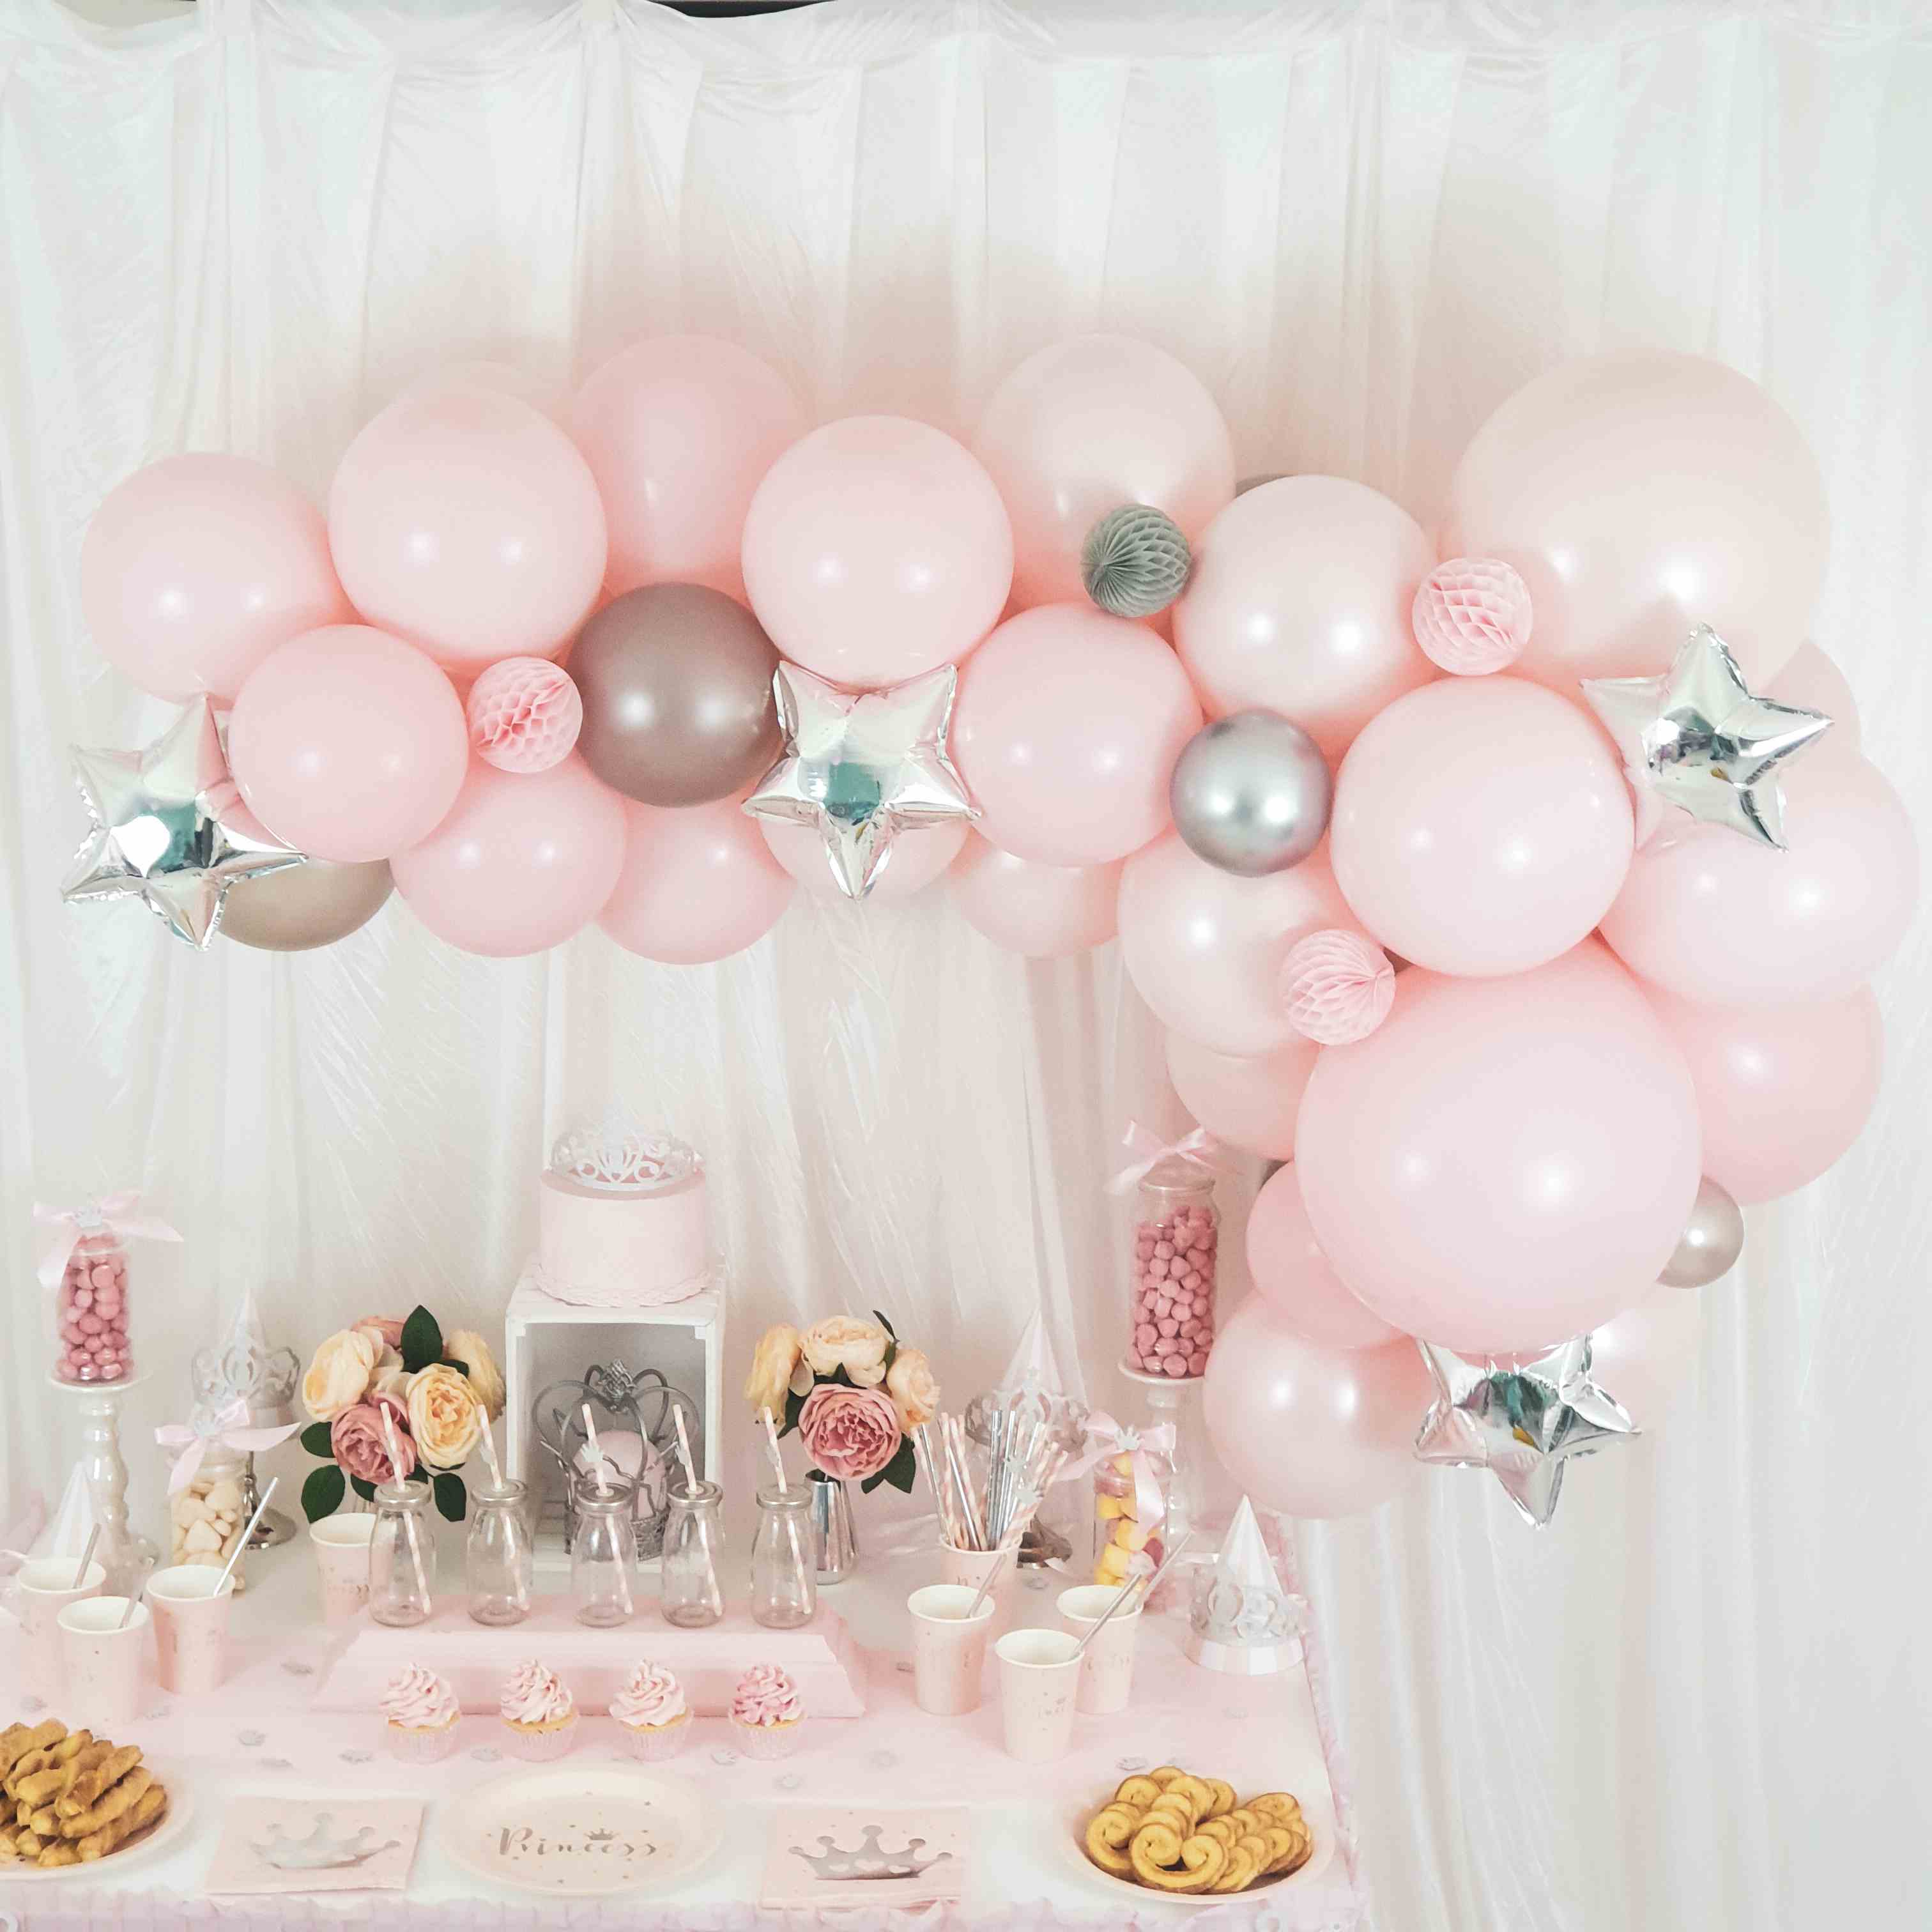 Des ballons roses pour organiser une jolie fête réussie